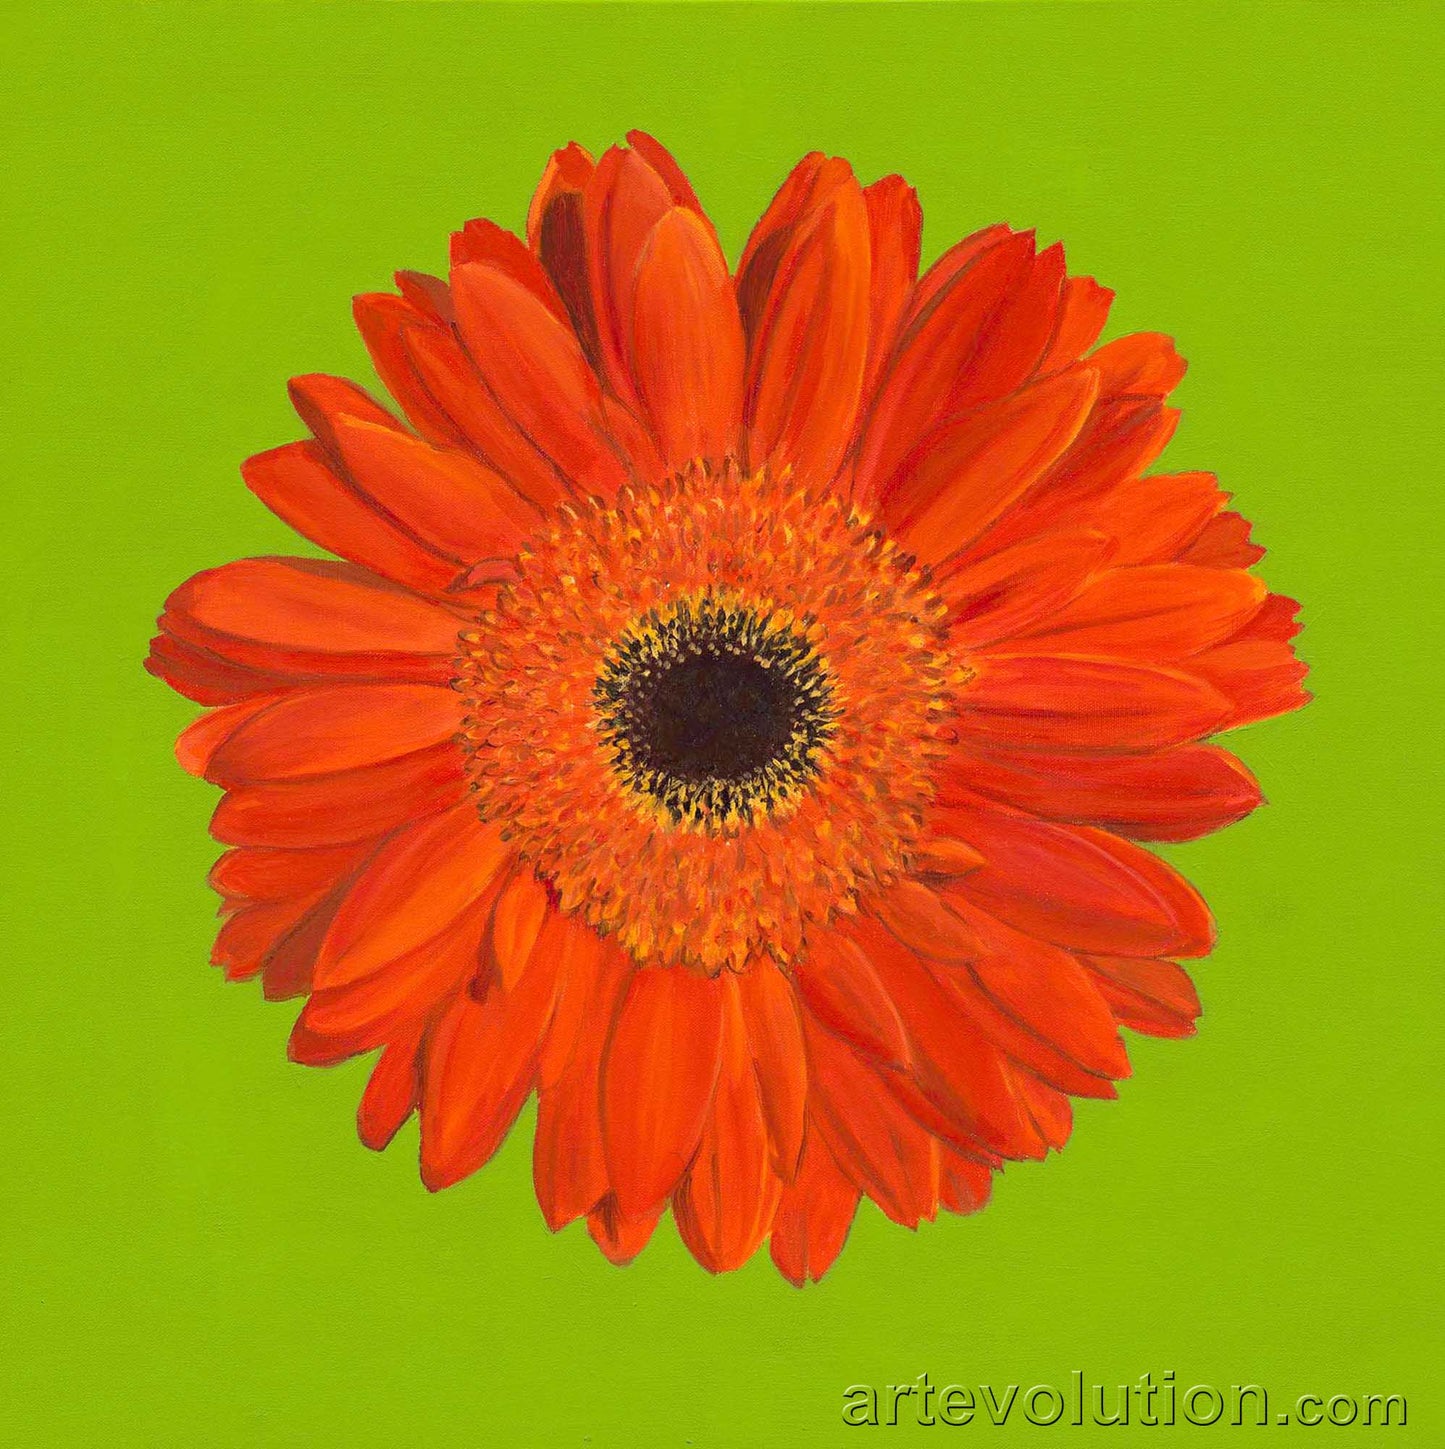 Portrait of an Orange Gerbera Daisy